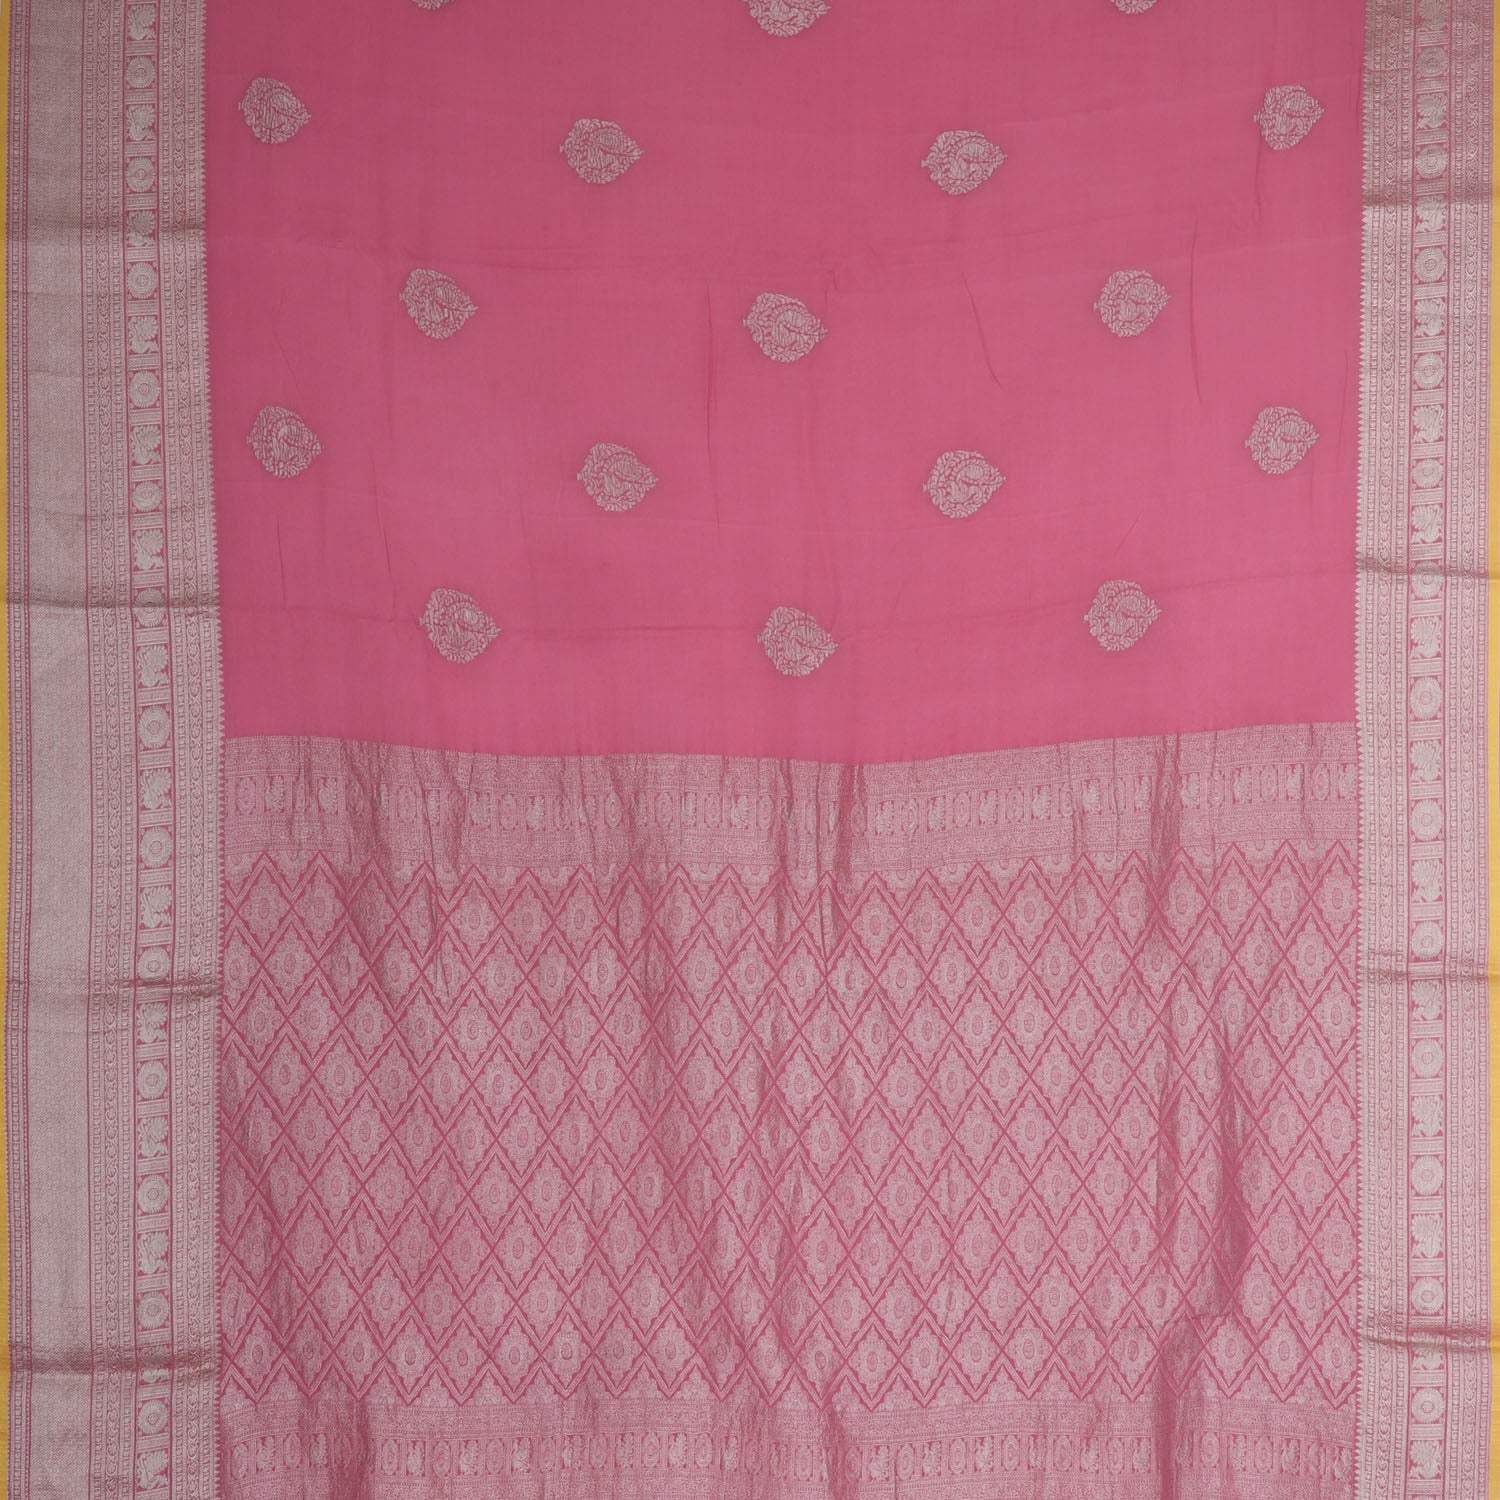 Flamingo Pink Banarasi Silk Saree With Floral Buttas - Singhania's